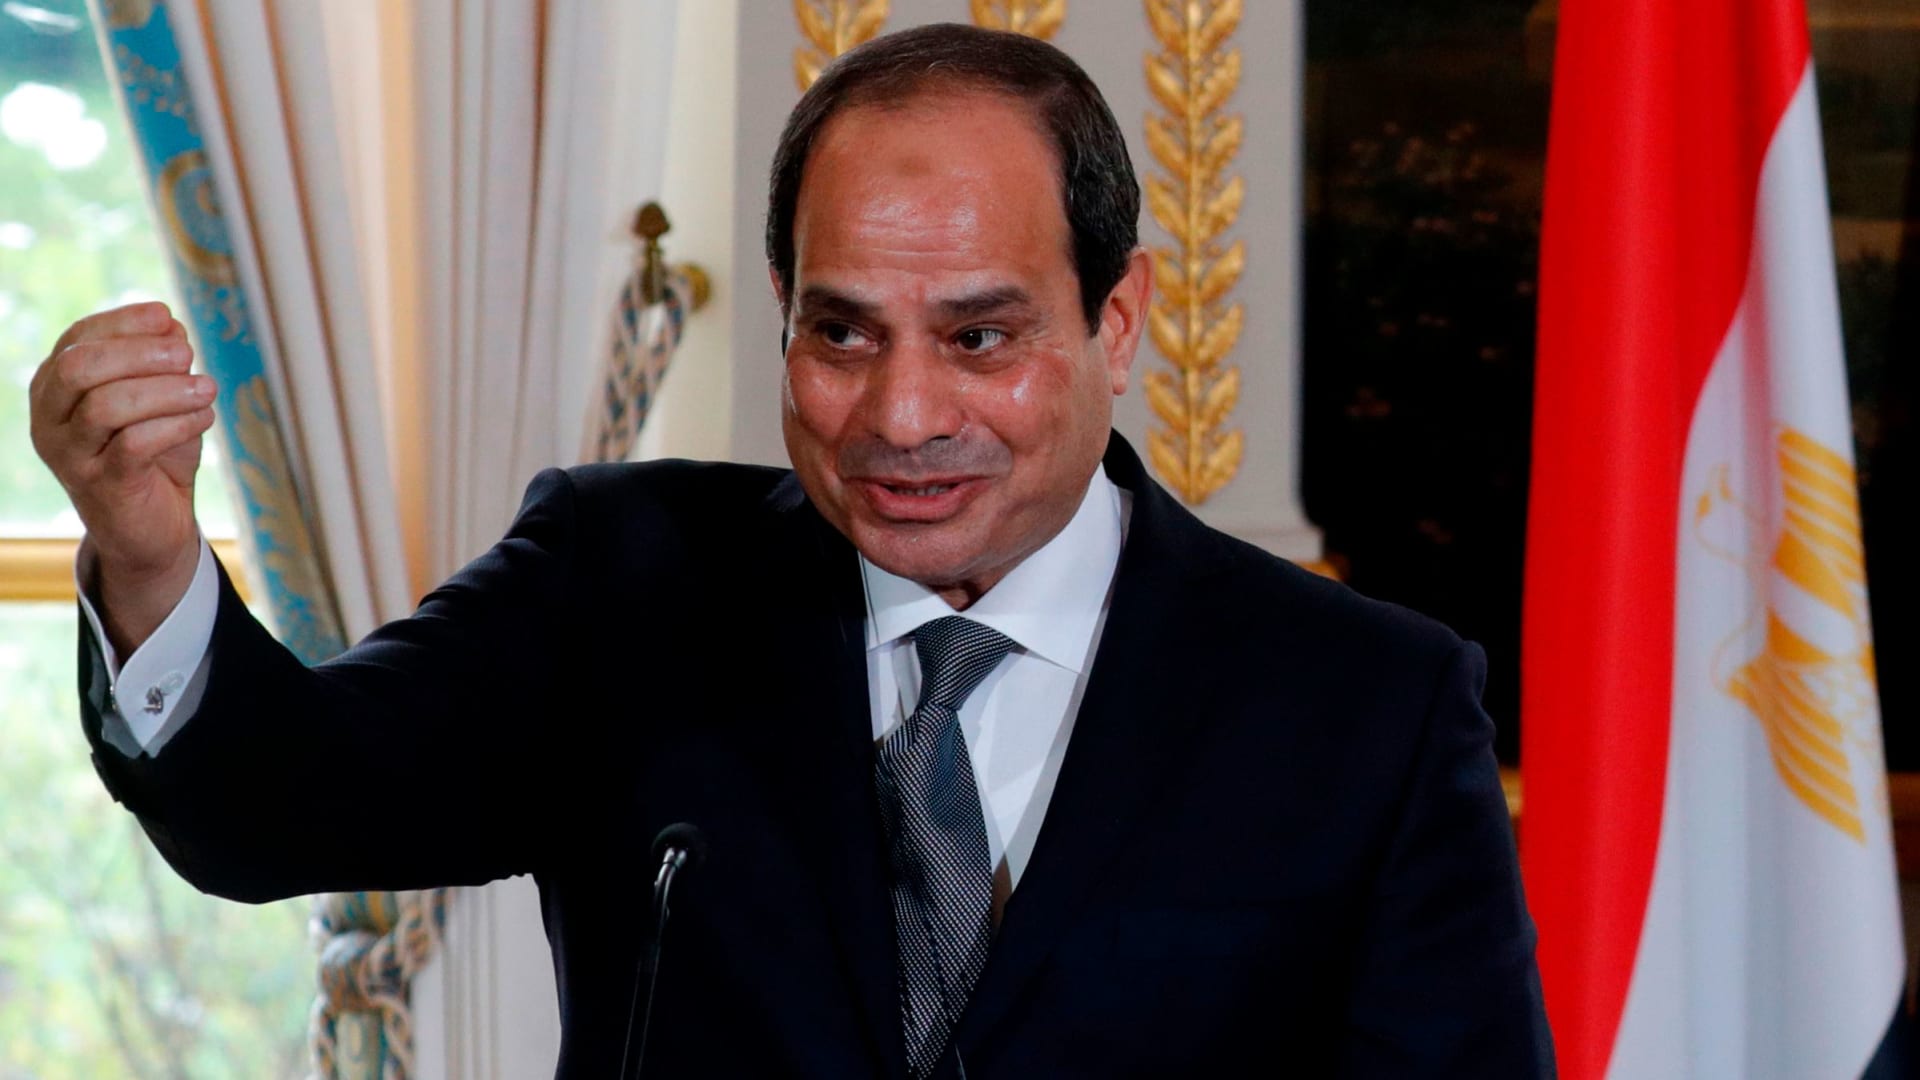 السيسي رئيسا لمصر لولاية جديدة بـ89.6% من الأصوات